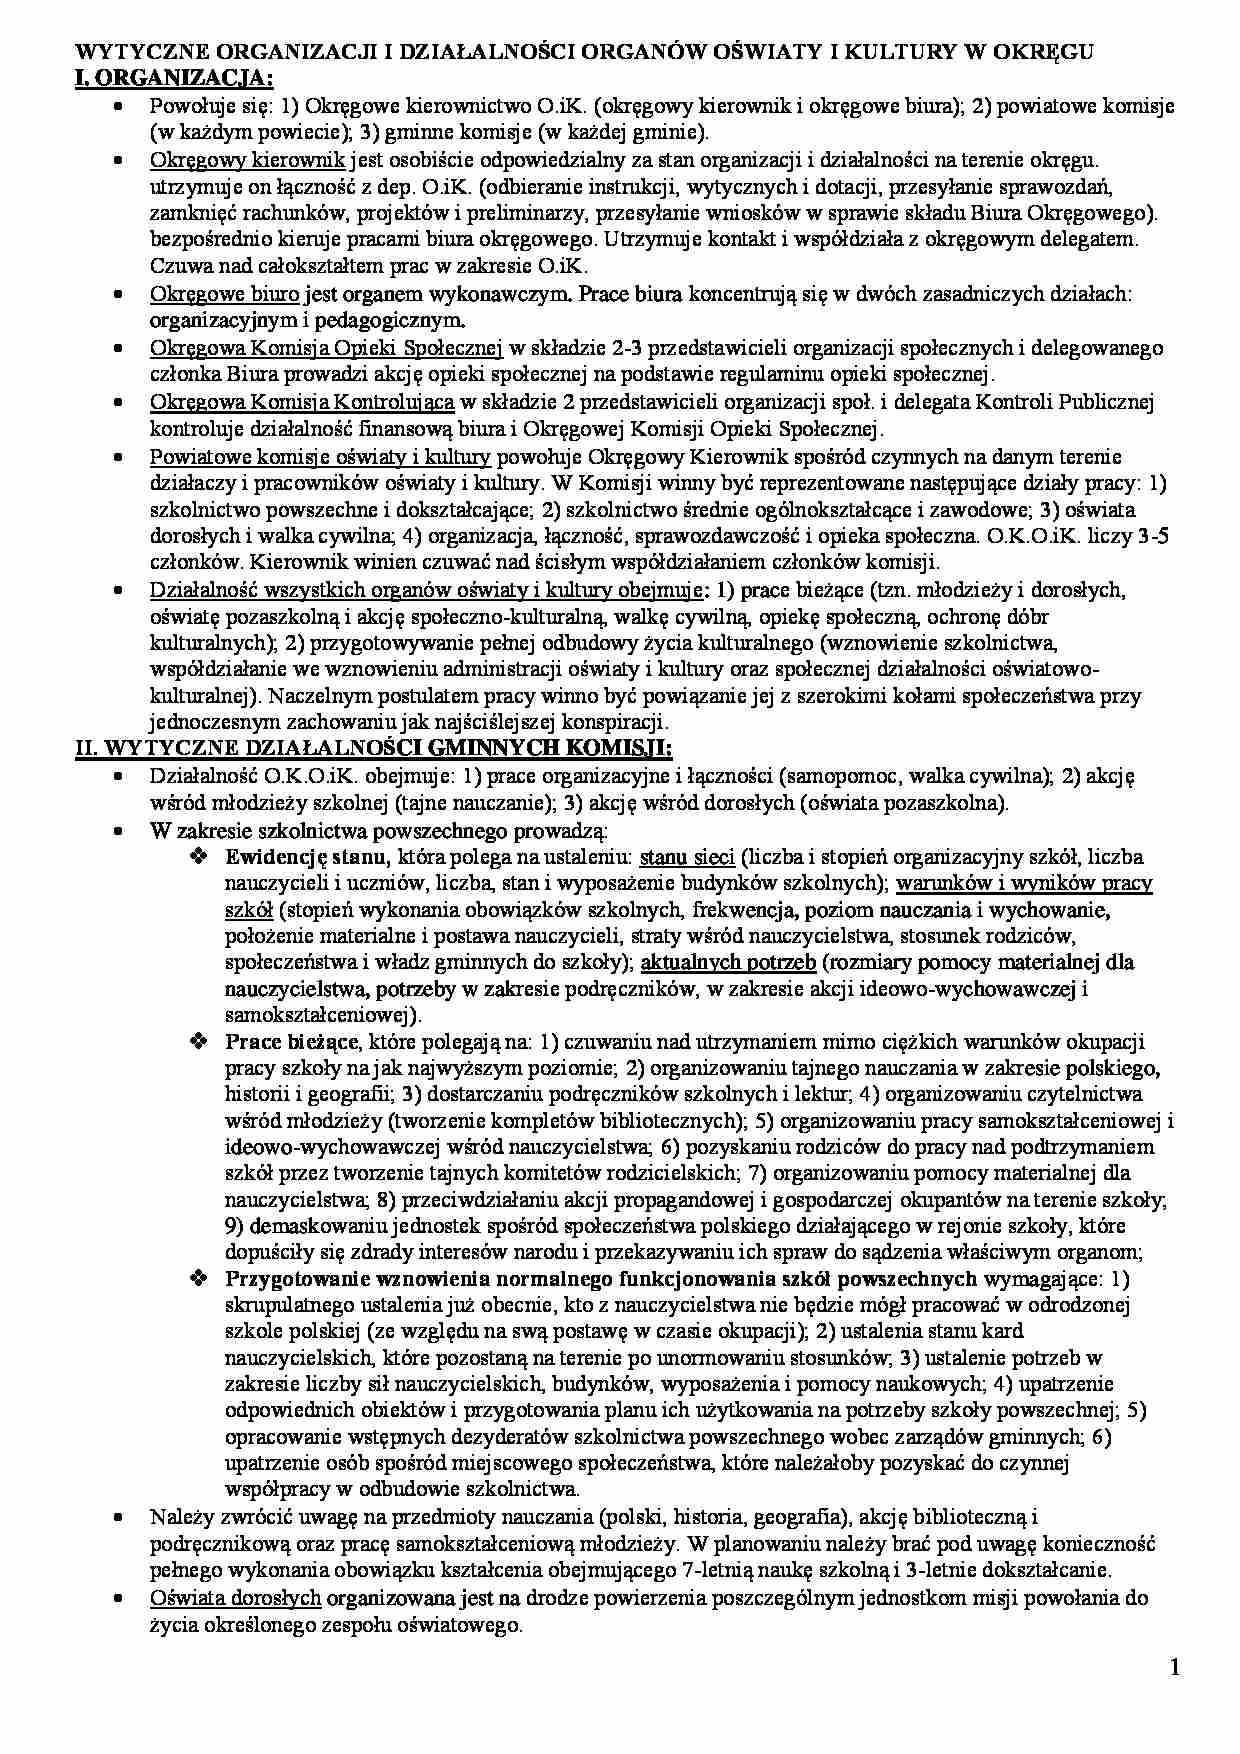 Wytyczne organizacji i działalności organów oświaty i kultury w okręgu. - strona 1